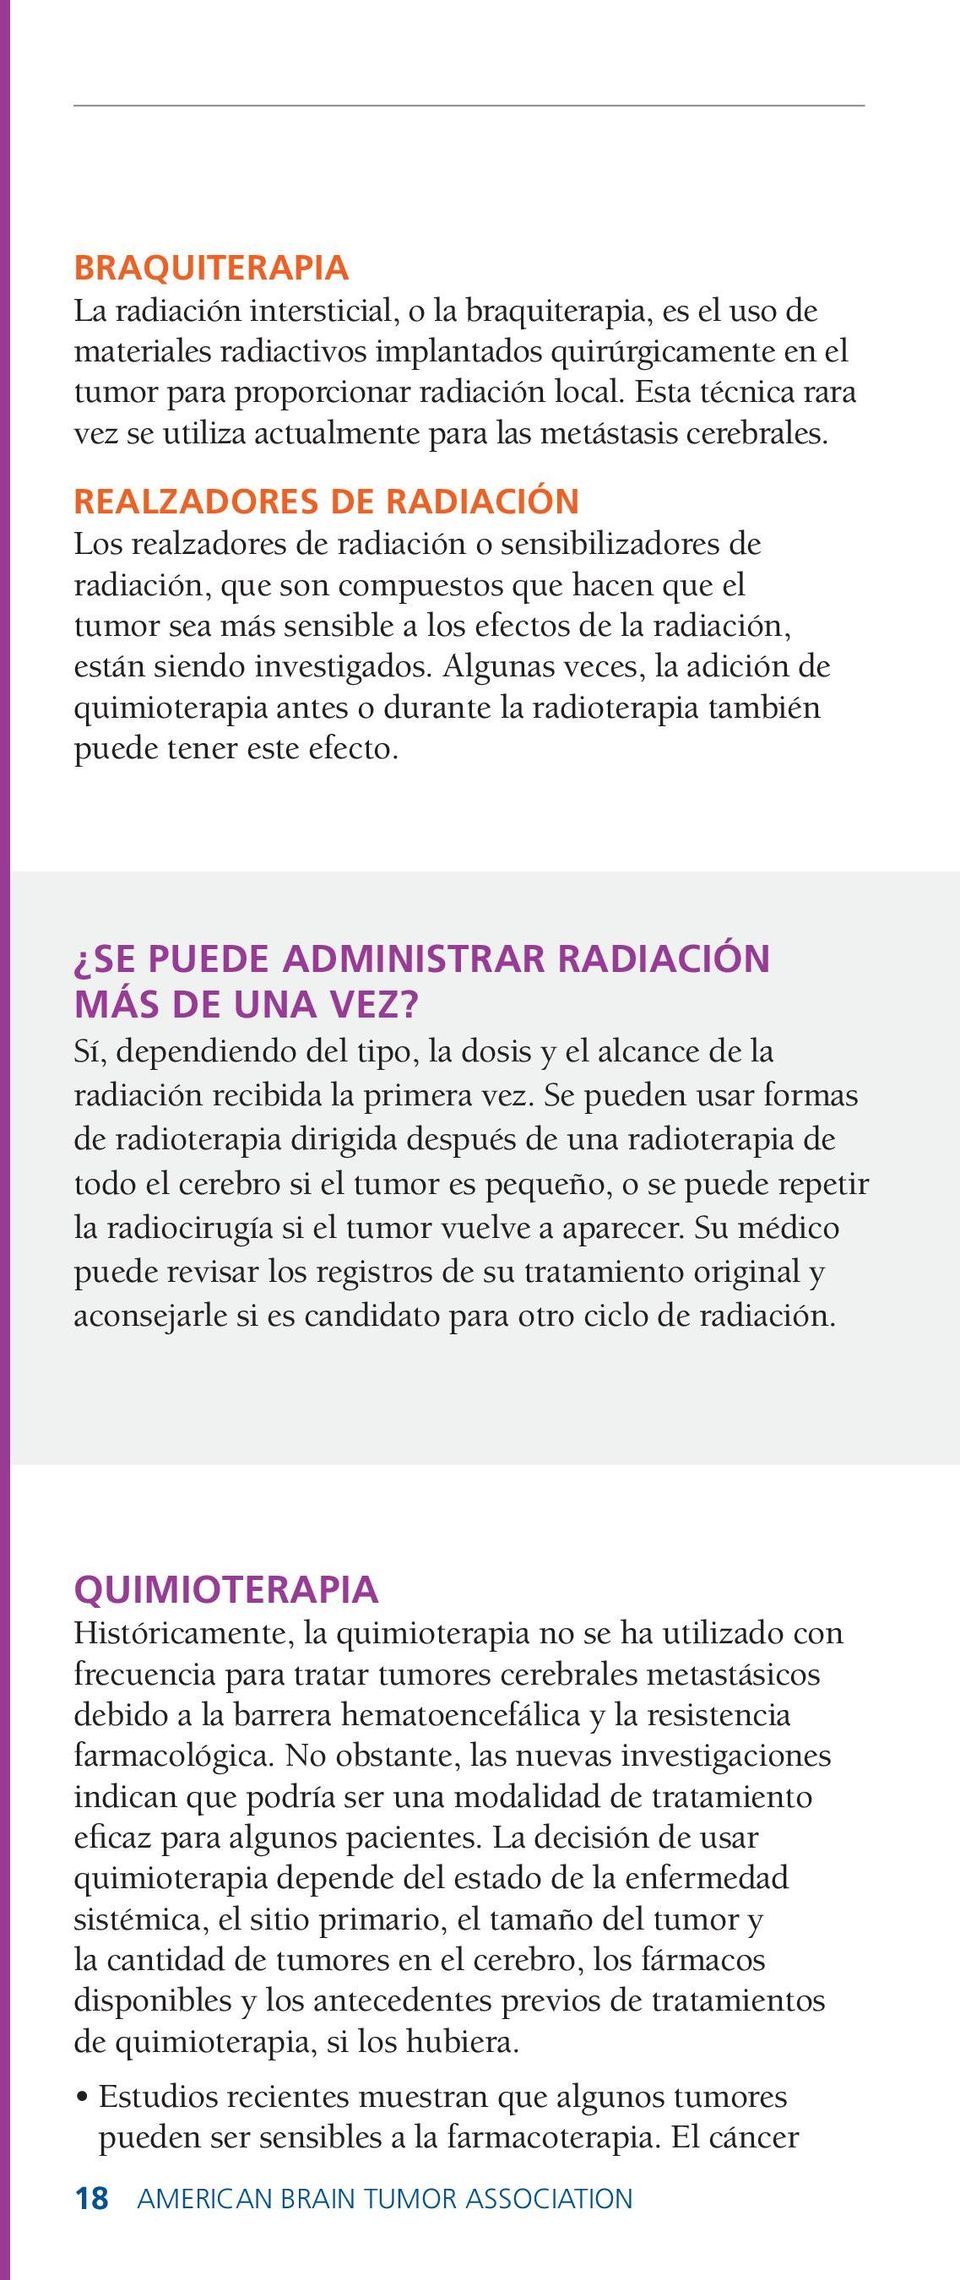 Realzadores de radiación Los realzadores de radiación o sensibilizadores de radiación, que son compuestos que hacen que el tumor sea más sensible a los efectos de la radiación, están siendo